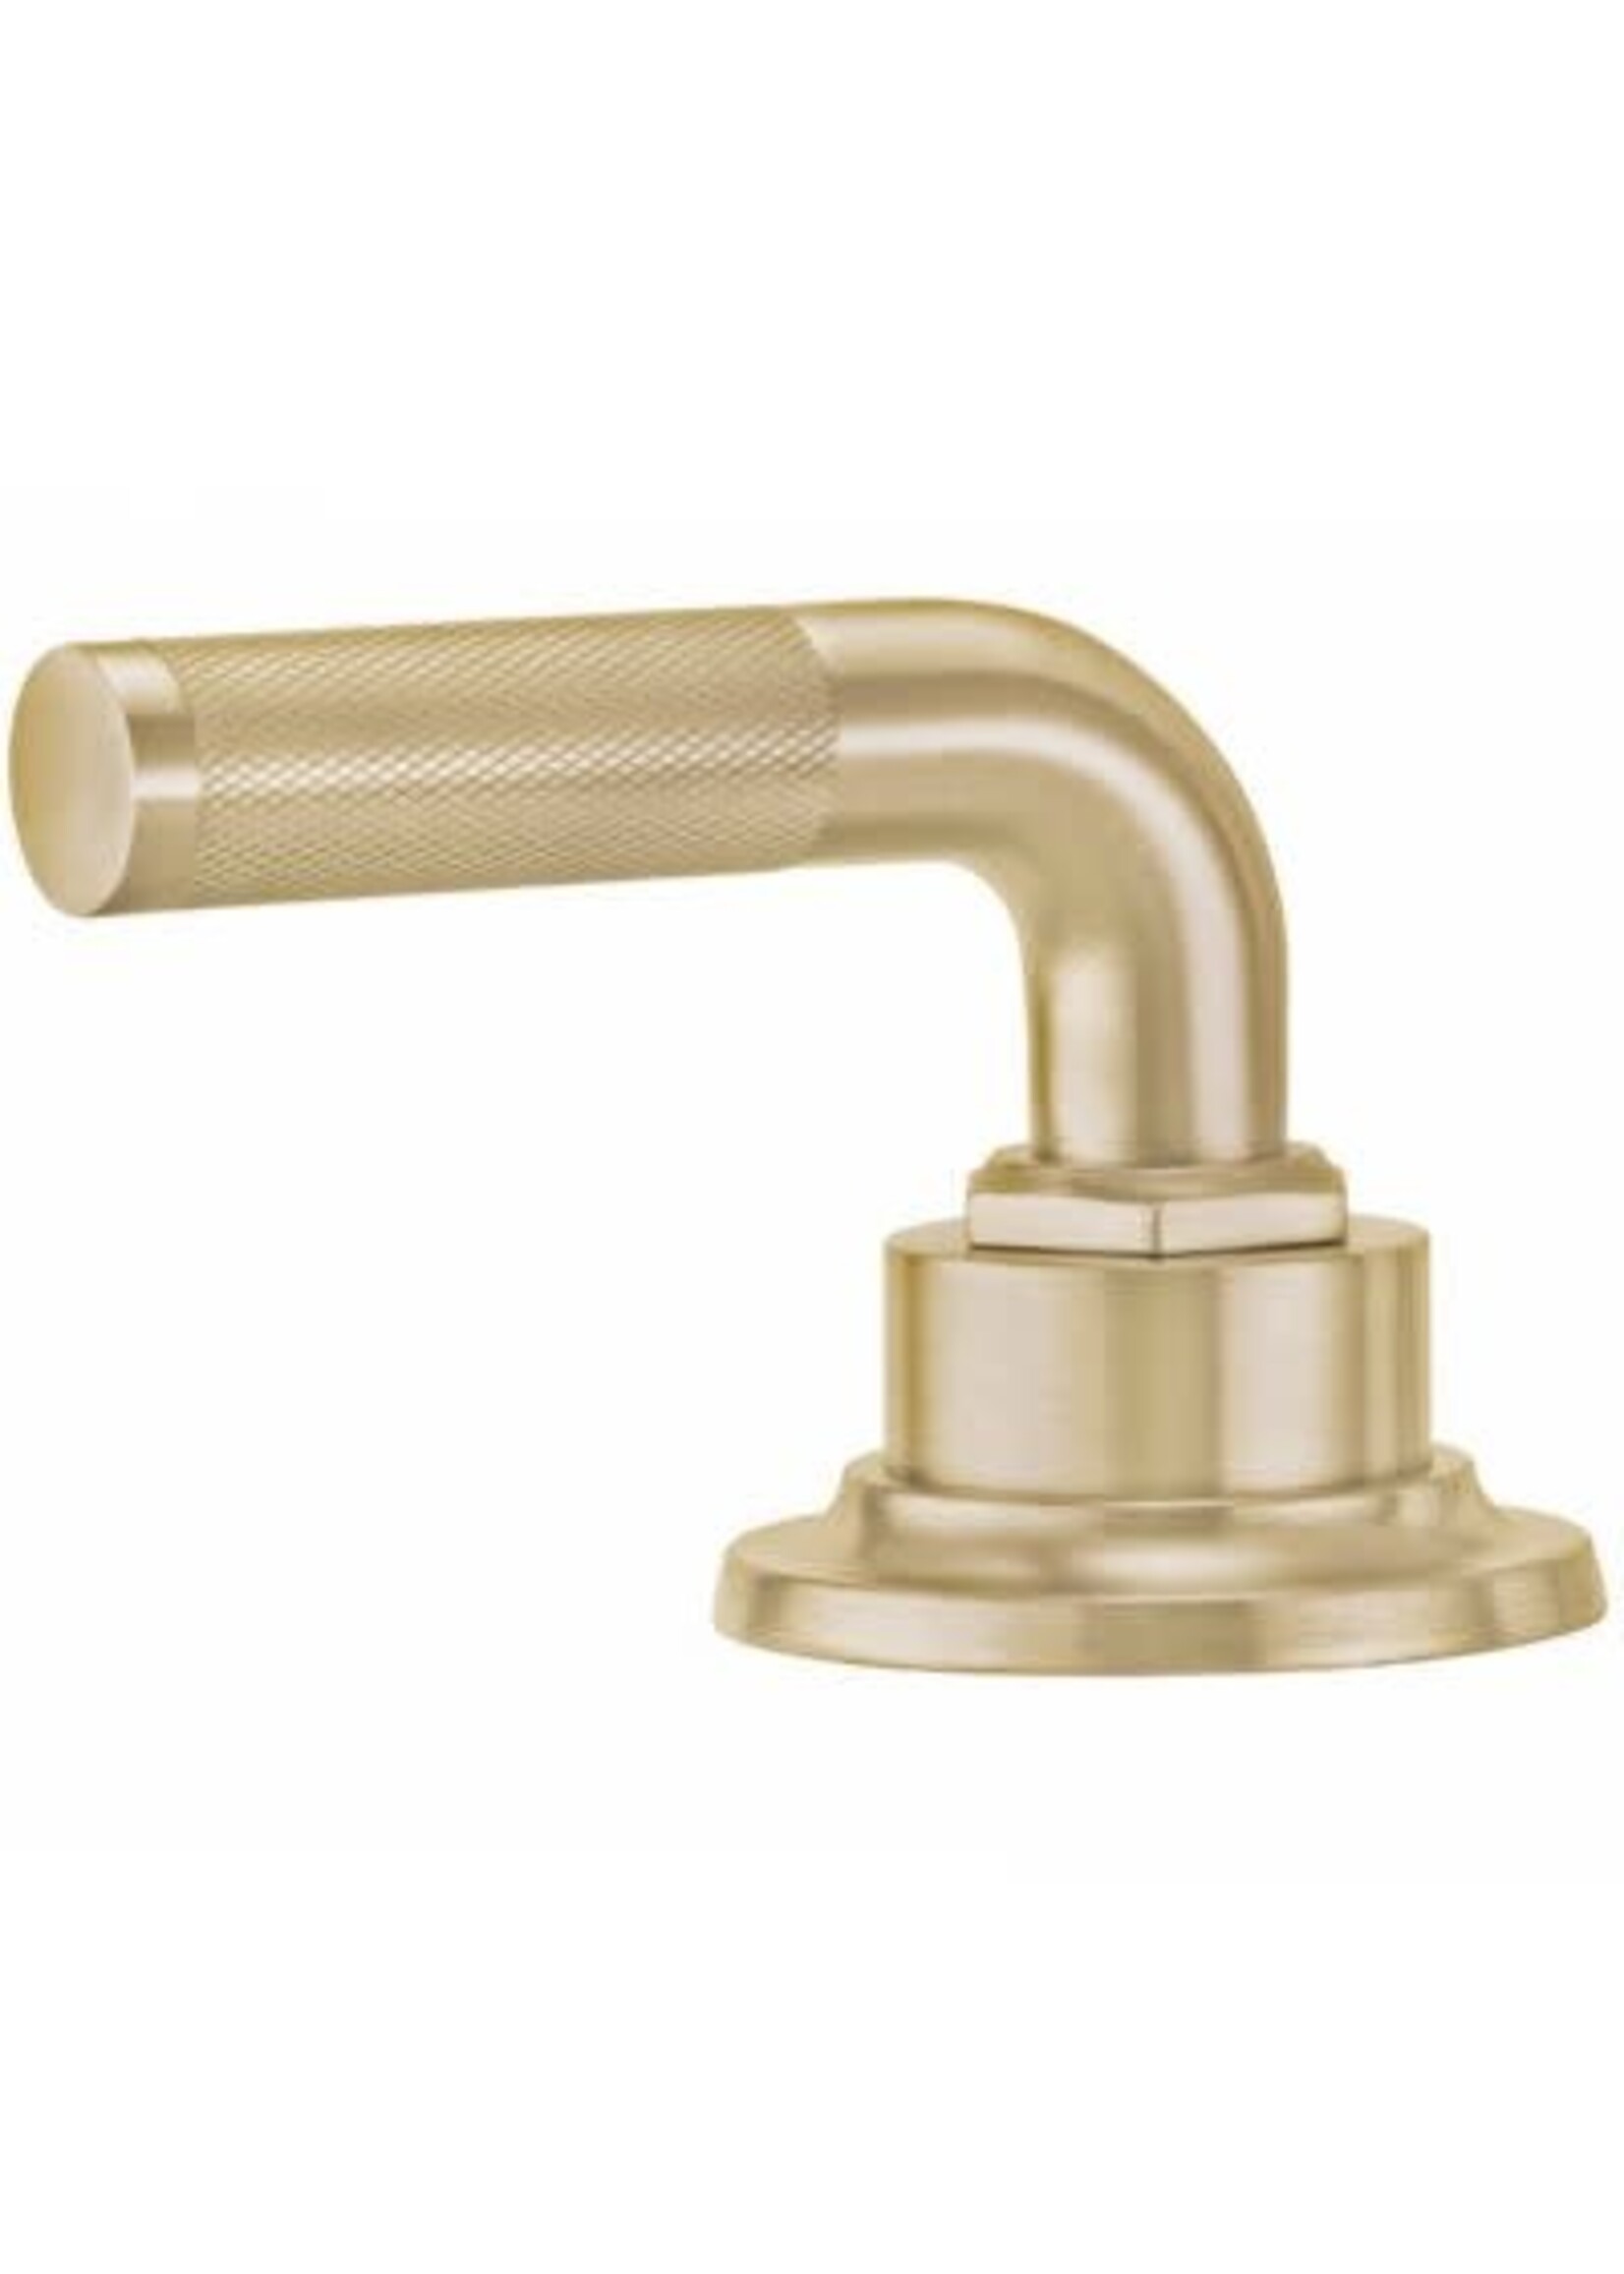 California Faucets California Faucets Tamalpais 8" Widespread Lavatory Faucet Arc Spout